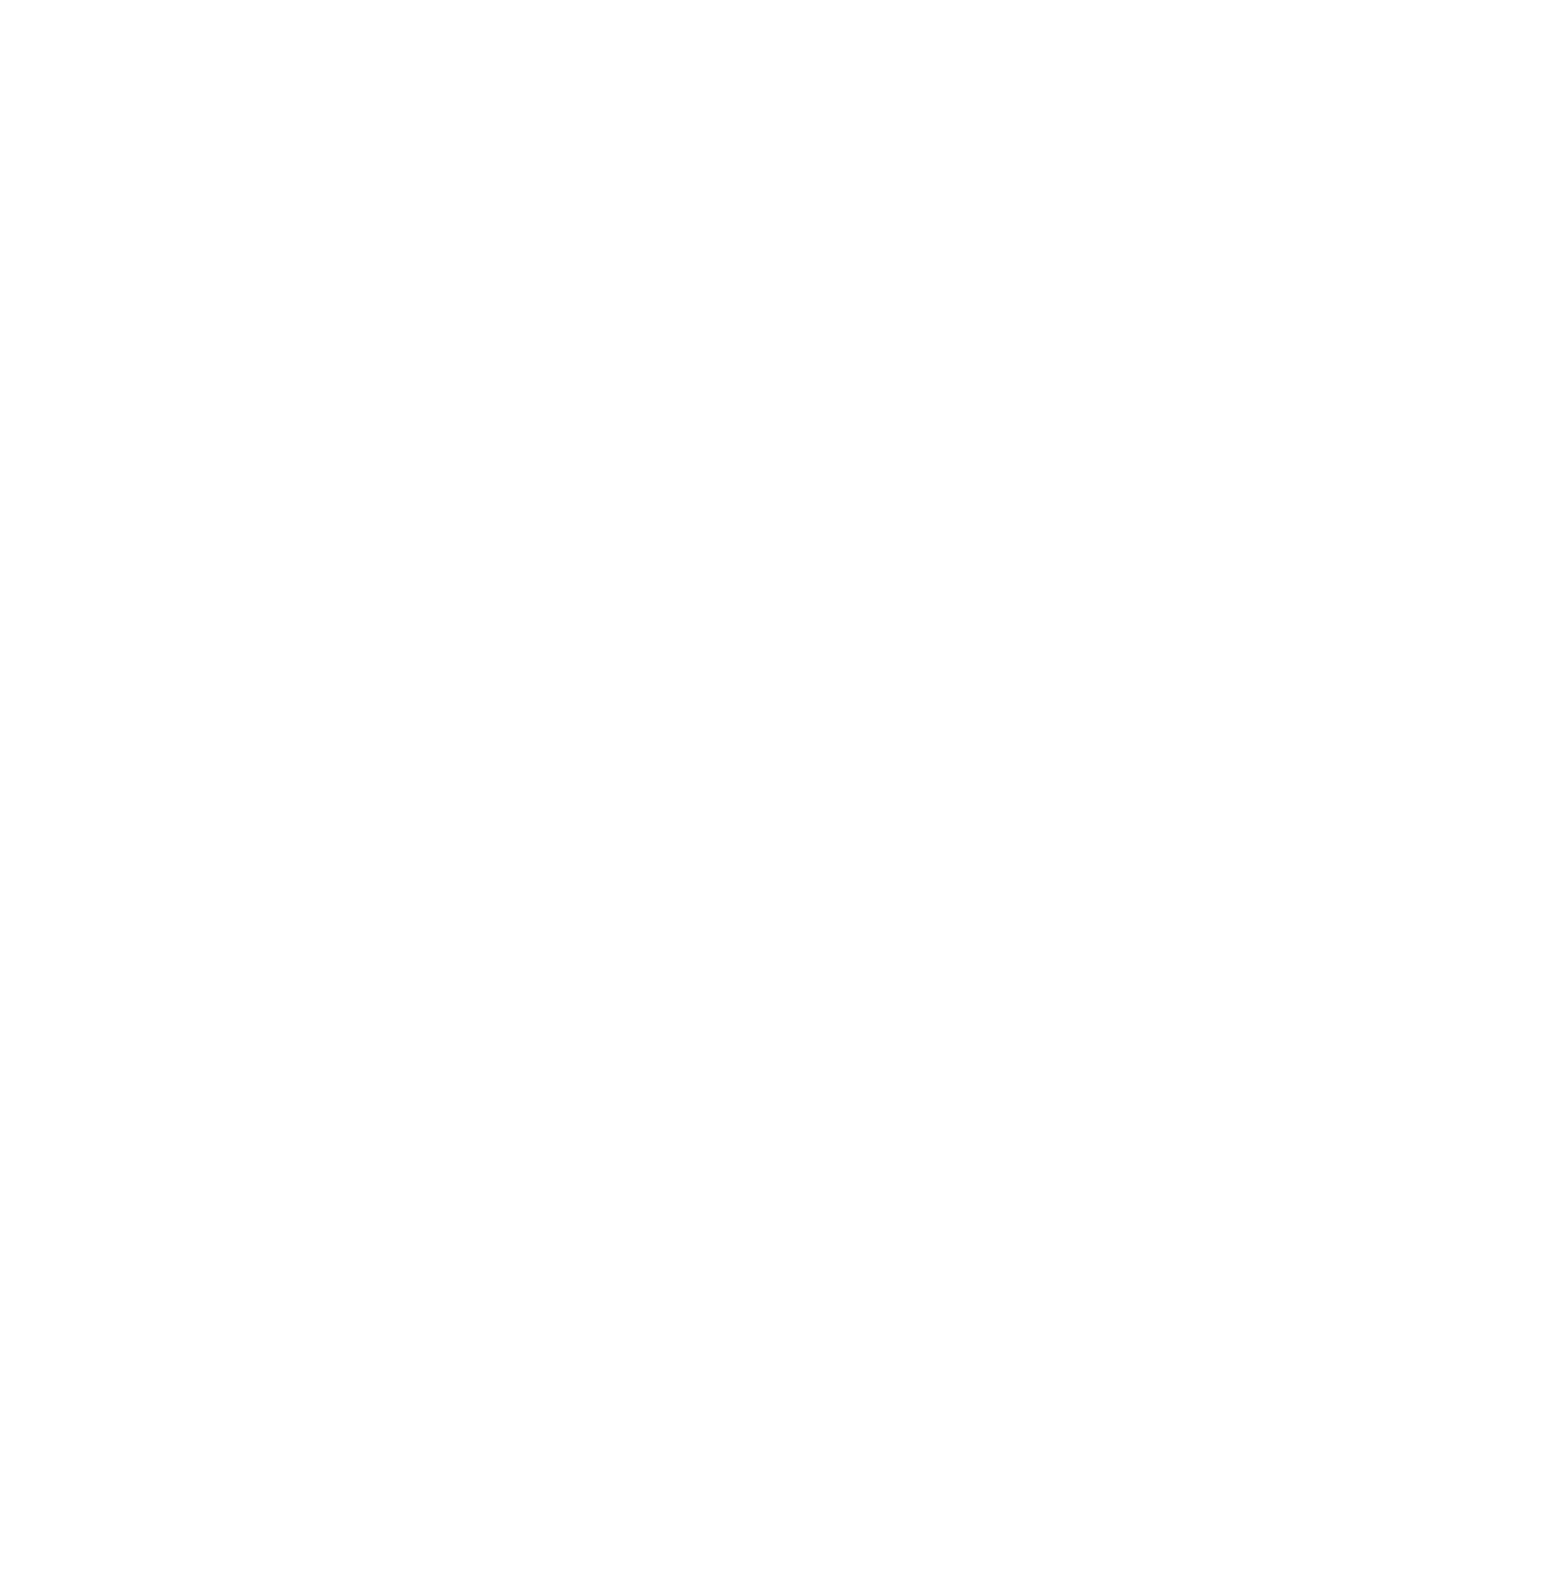 Oscar Health logo for dark backgrounds (transparent PNG)